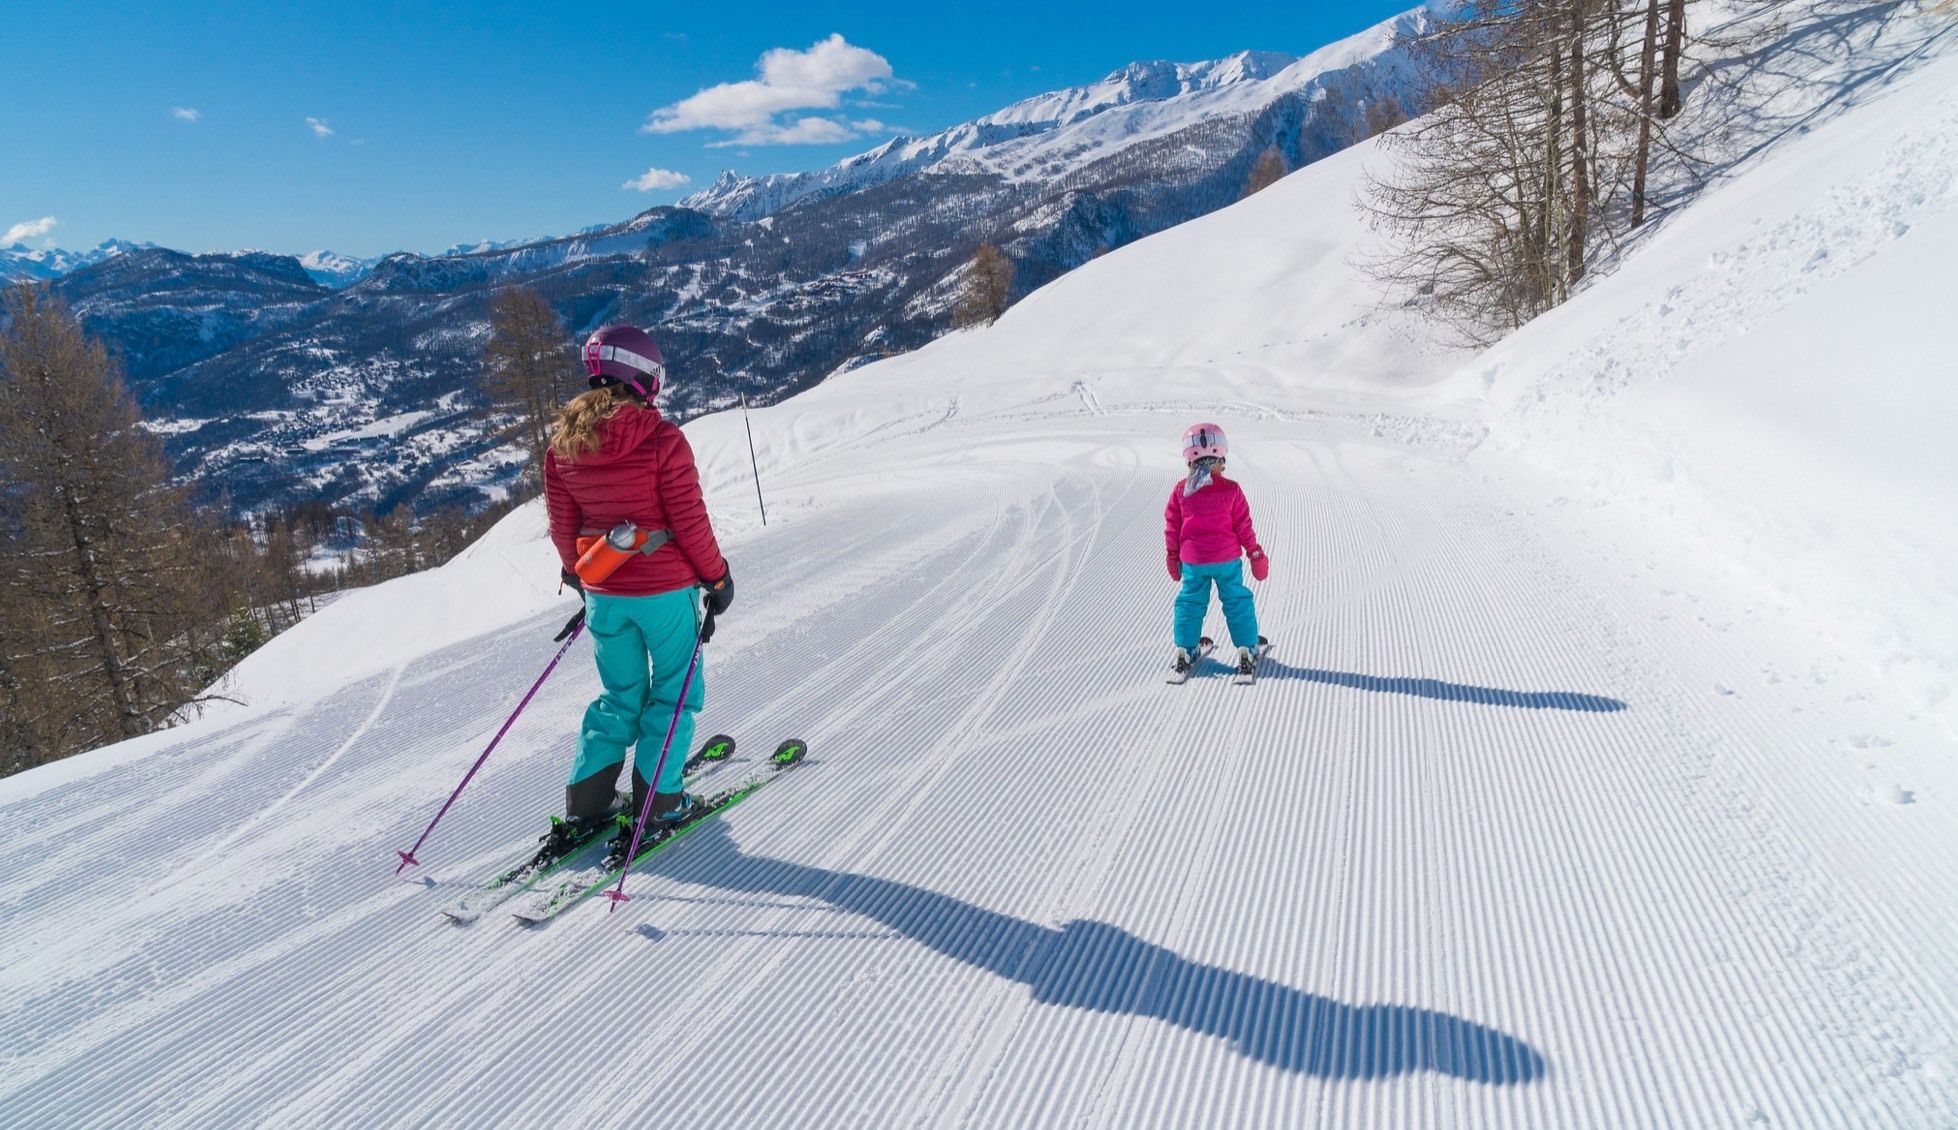 Straks alleen nog maar de locale kinderen op de ski's?